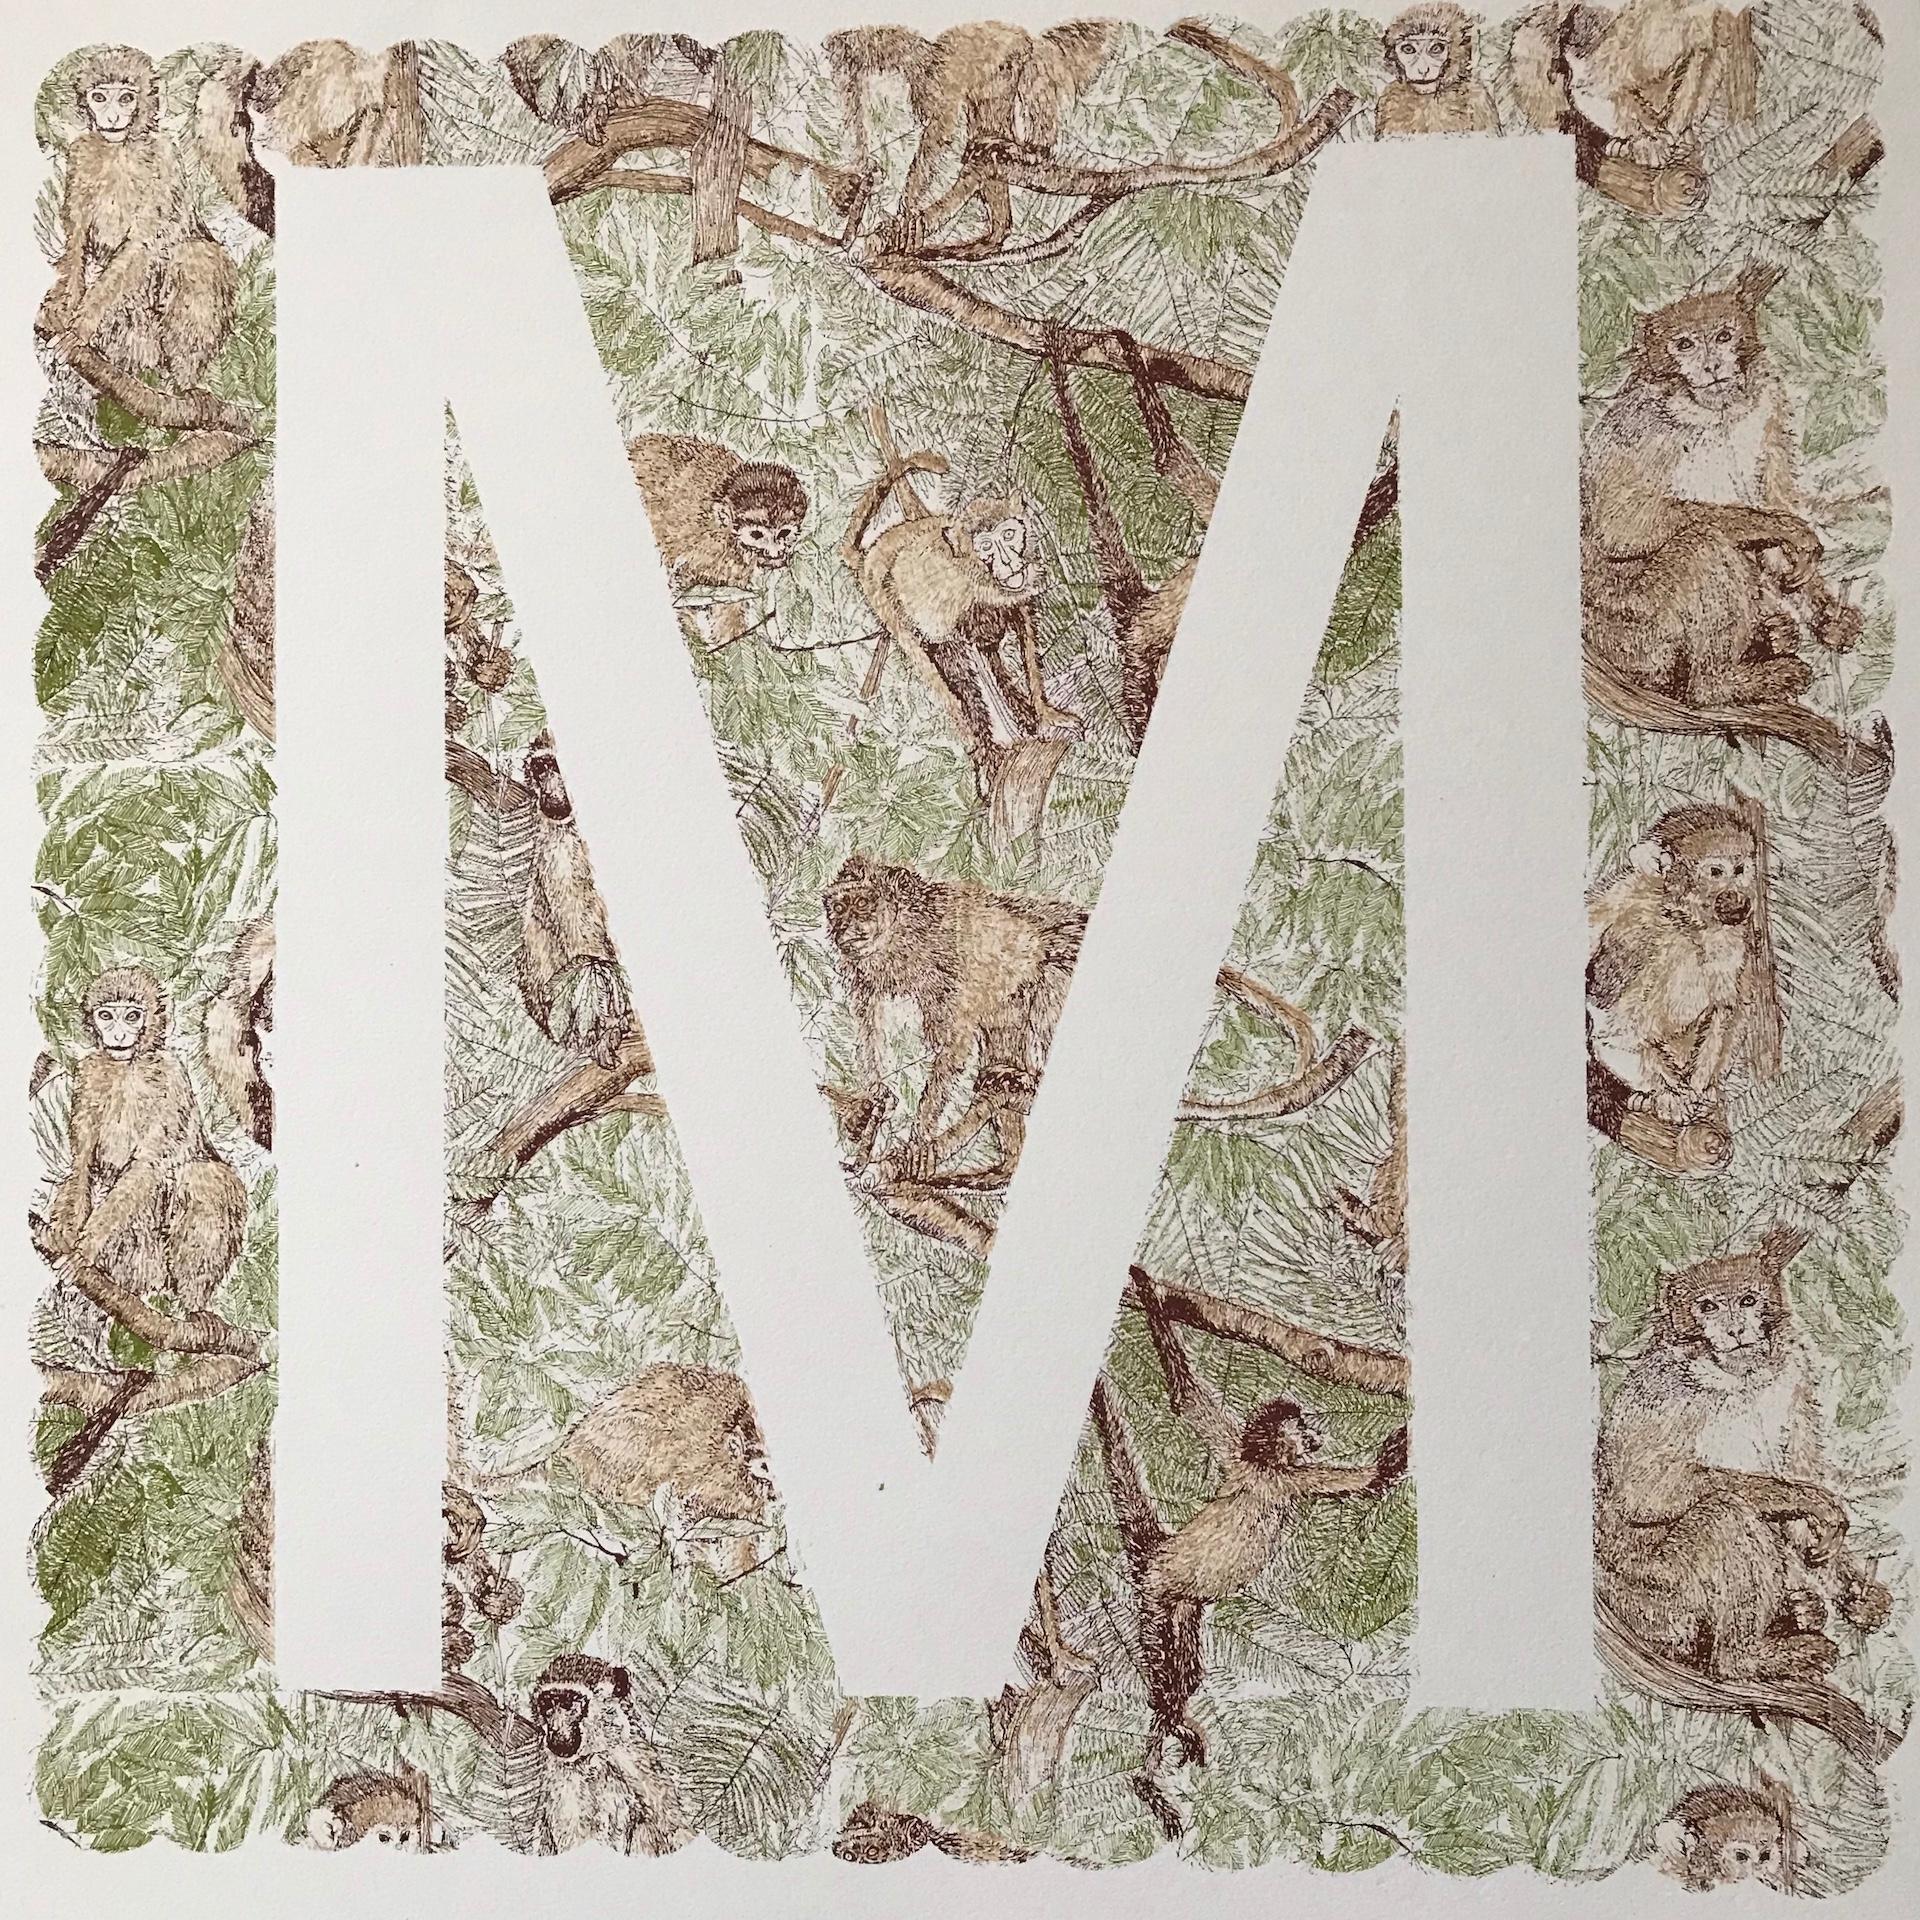 Clare Halifax, M ist für Monkey, Tierkunst, Alphabetdruck, Monogrammdruck